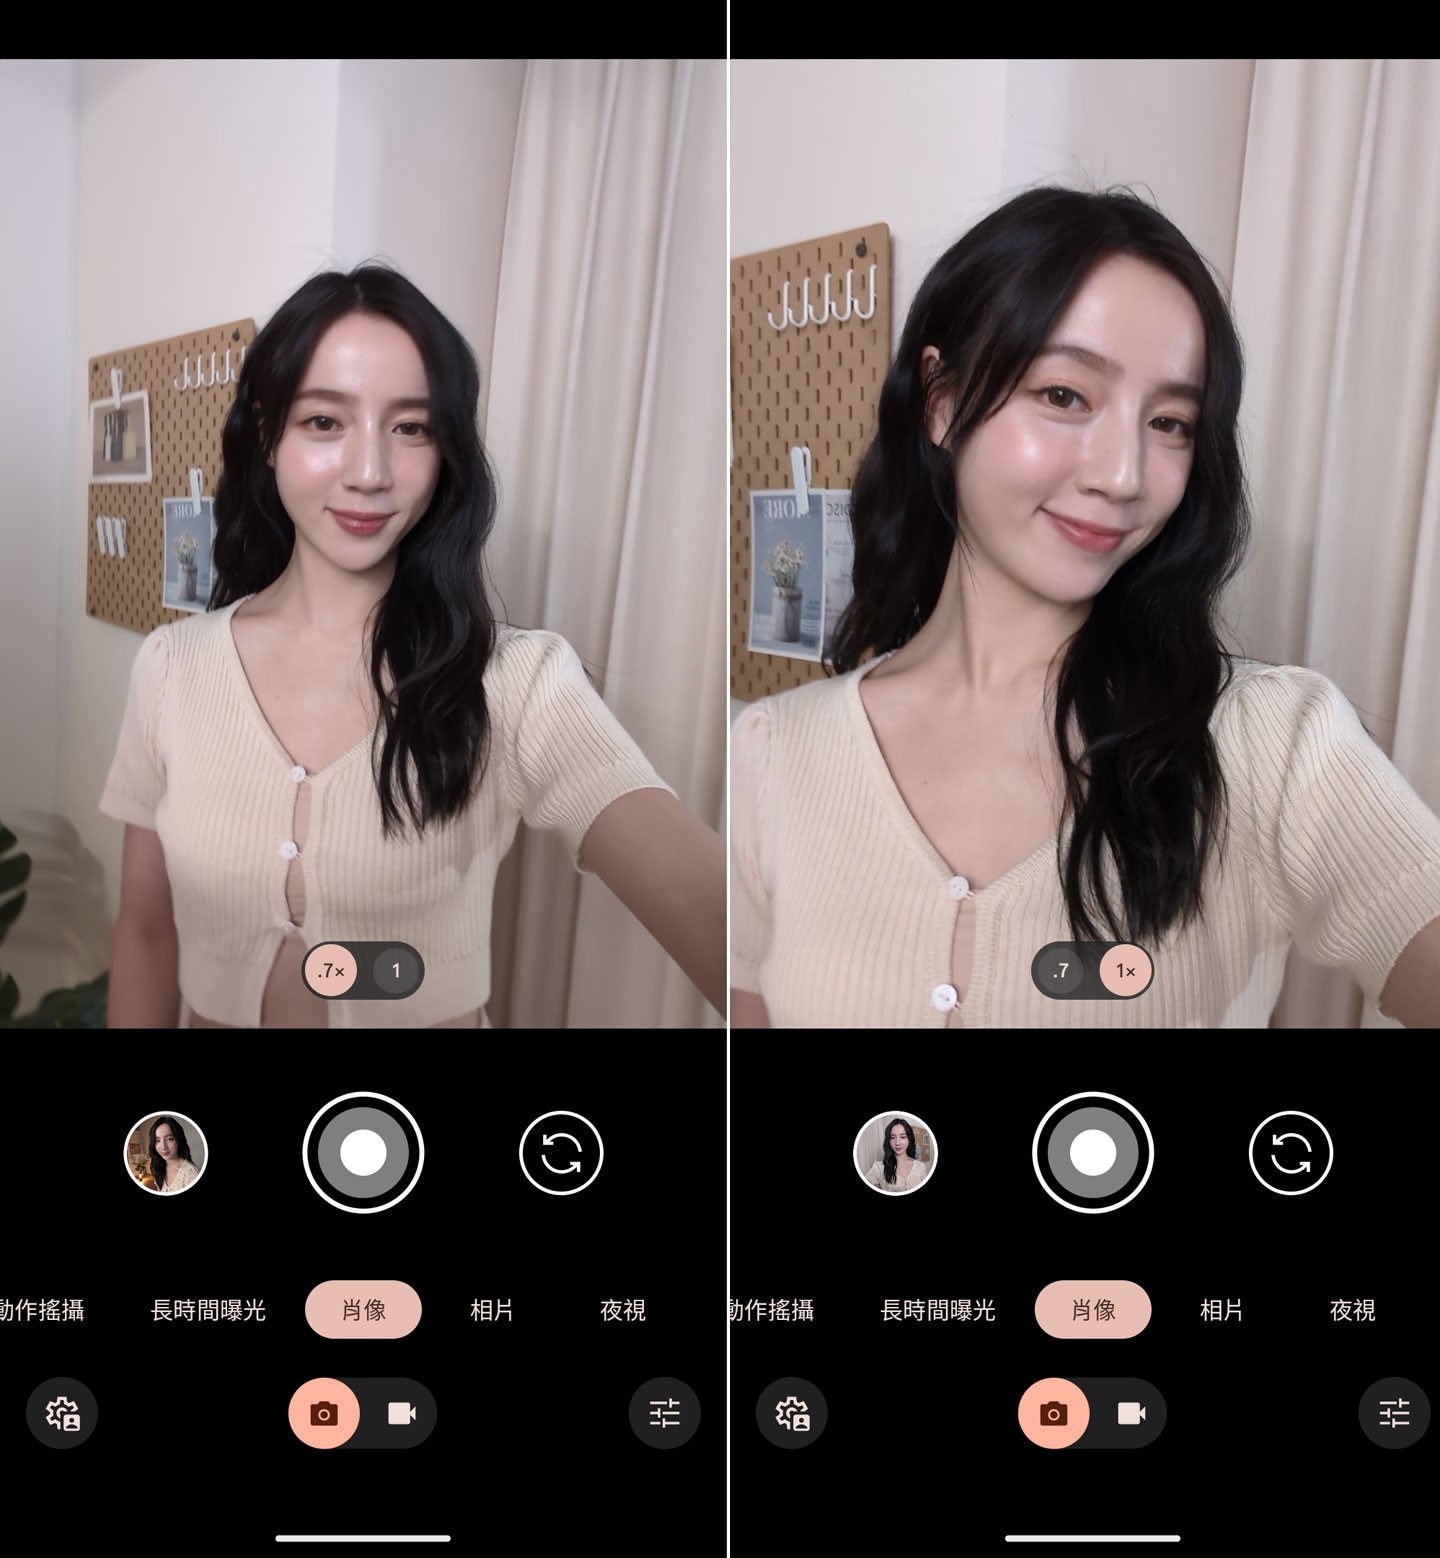 Pixel 8 Pro 的前鏡提供 0.7x 與 1x 兩個焦段，分別適合拍攝出更多場景(或合照)，以及更突顯主角的特寫模式，只需切換至「肖像」模式，即可完全自動化拍攝出比擬單眼效果的人像照。